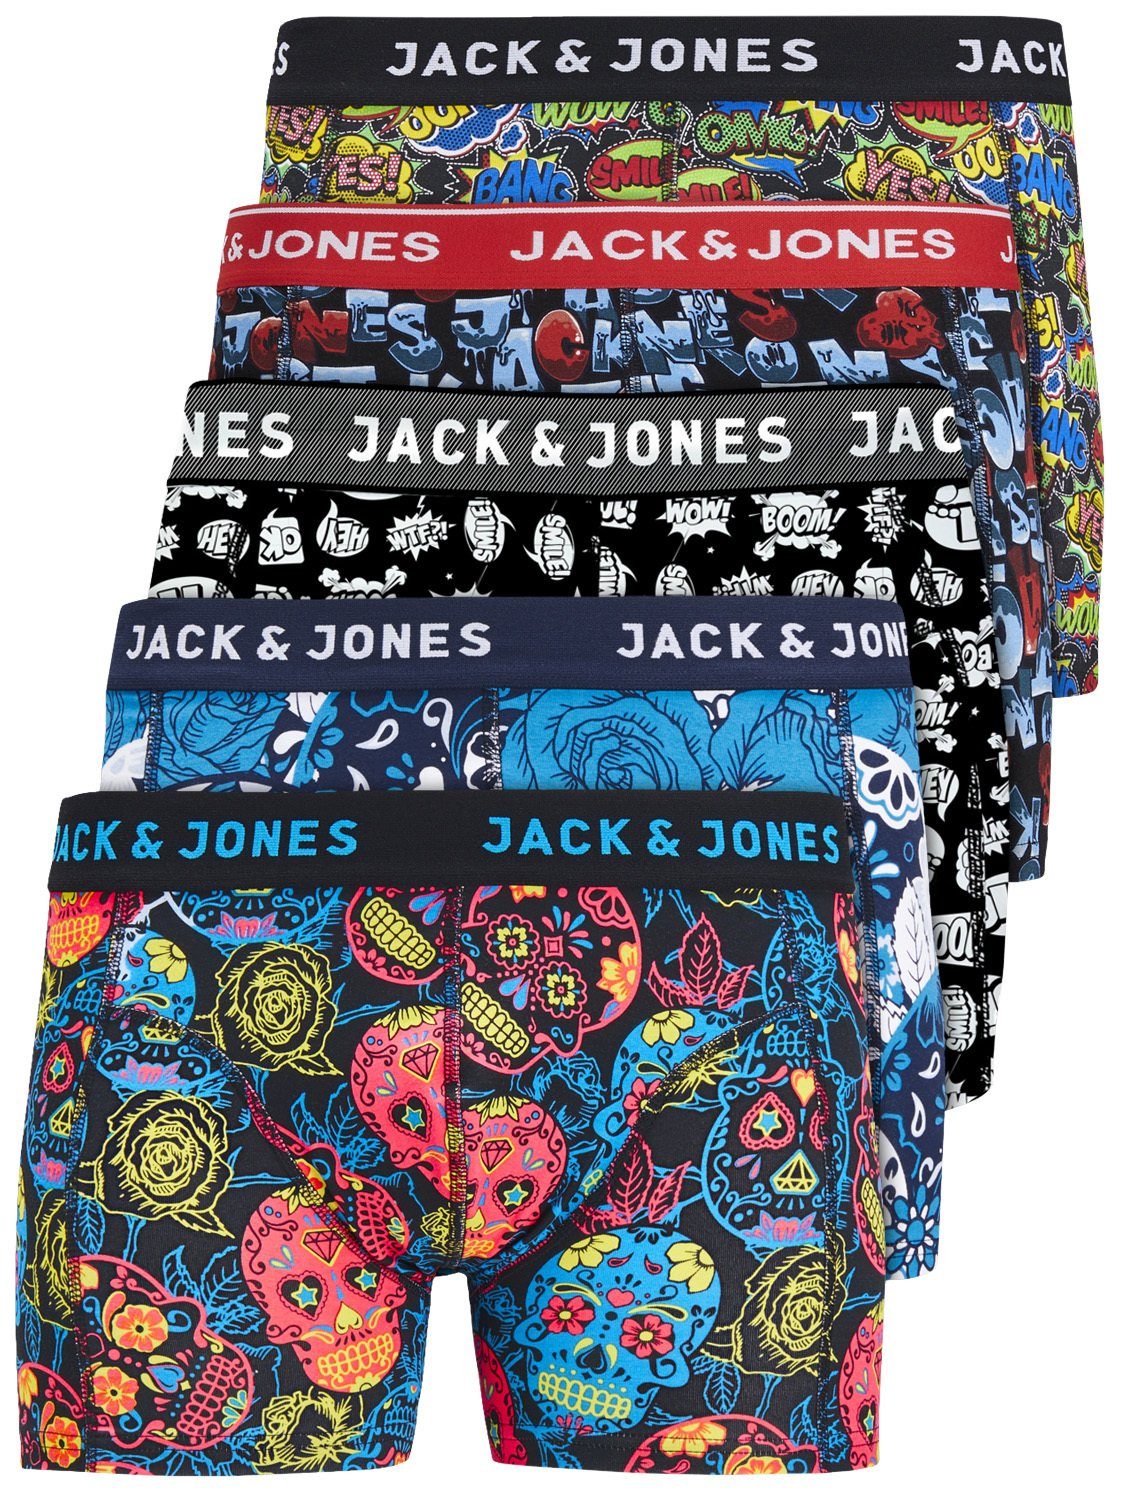 Jack & Jones Boxershorts Jacvel (5-St., 5er Pack) gute Passform durch elastische Baumwollqualität Detail Mix 4